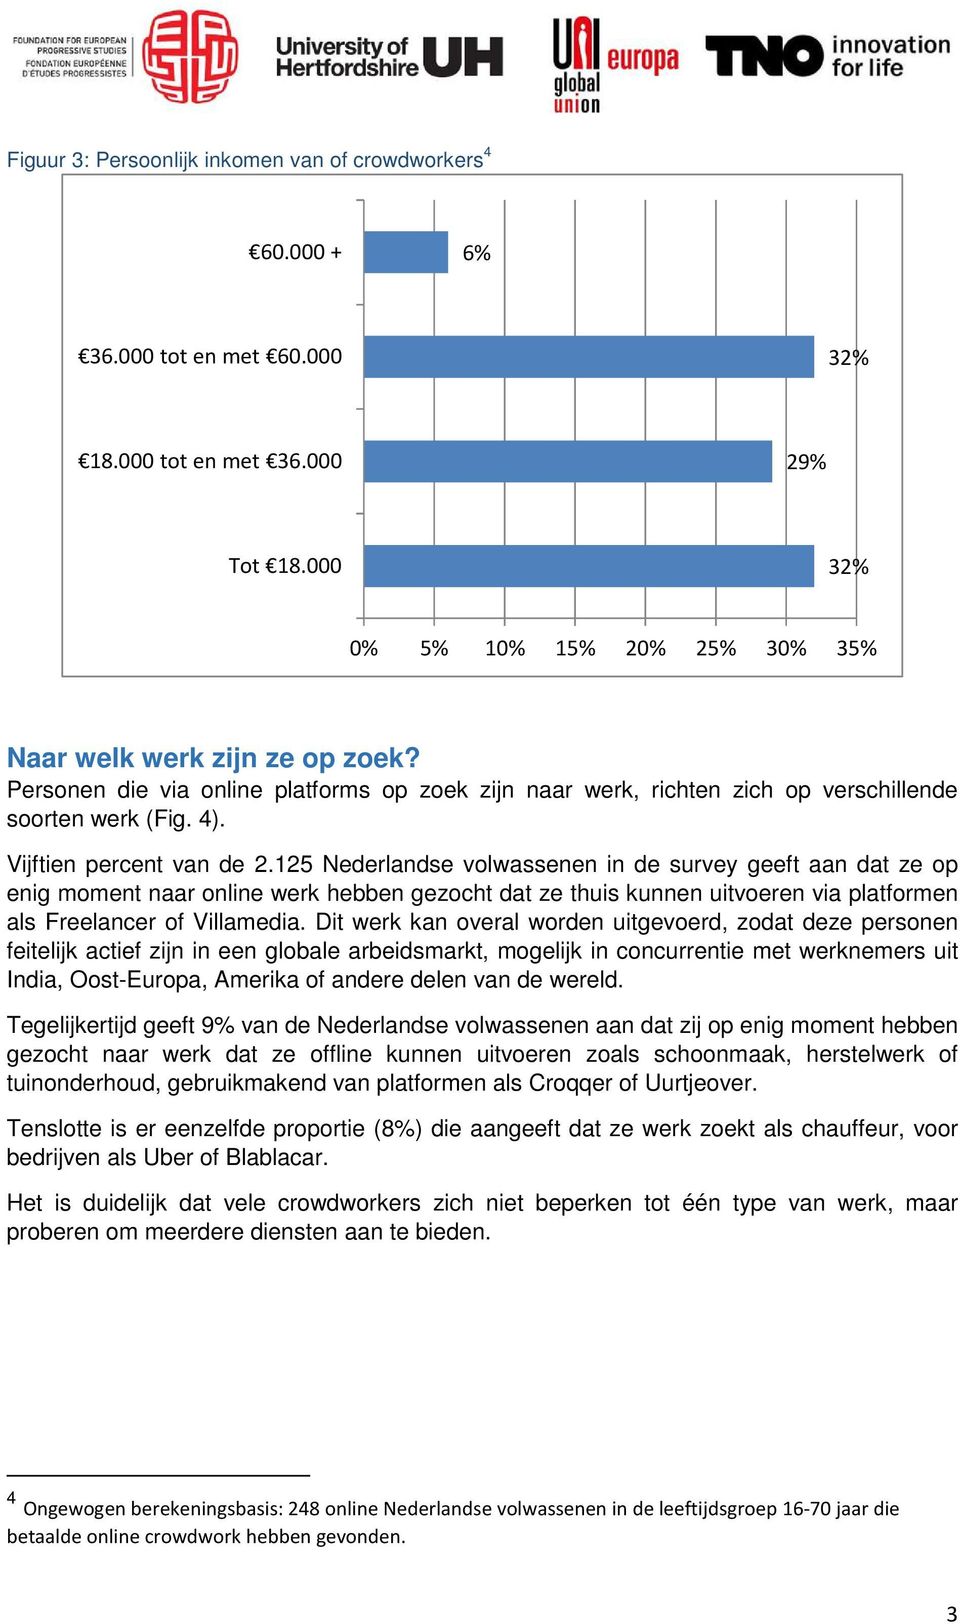 125 Nederlandse volwassenen in de survey geeft aan dat ze op enig moment naar online werk hebben gezocht dat ze thuis kunnen uitvoeren via platformen als Freelancer of Villamedia.